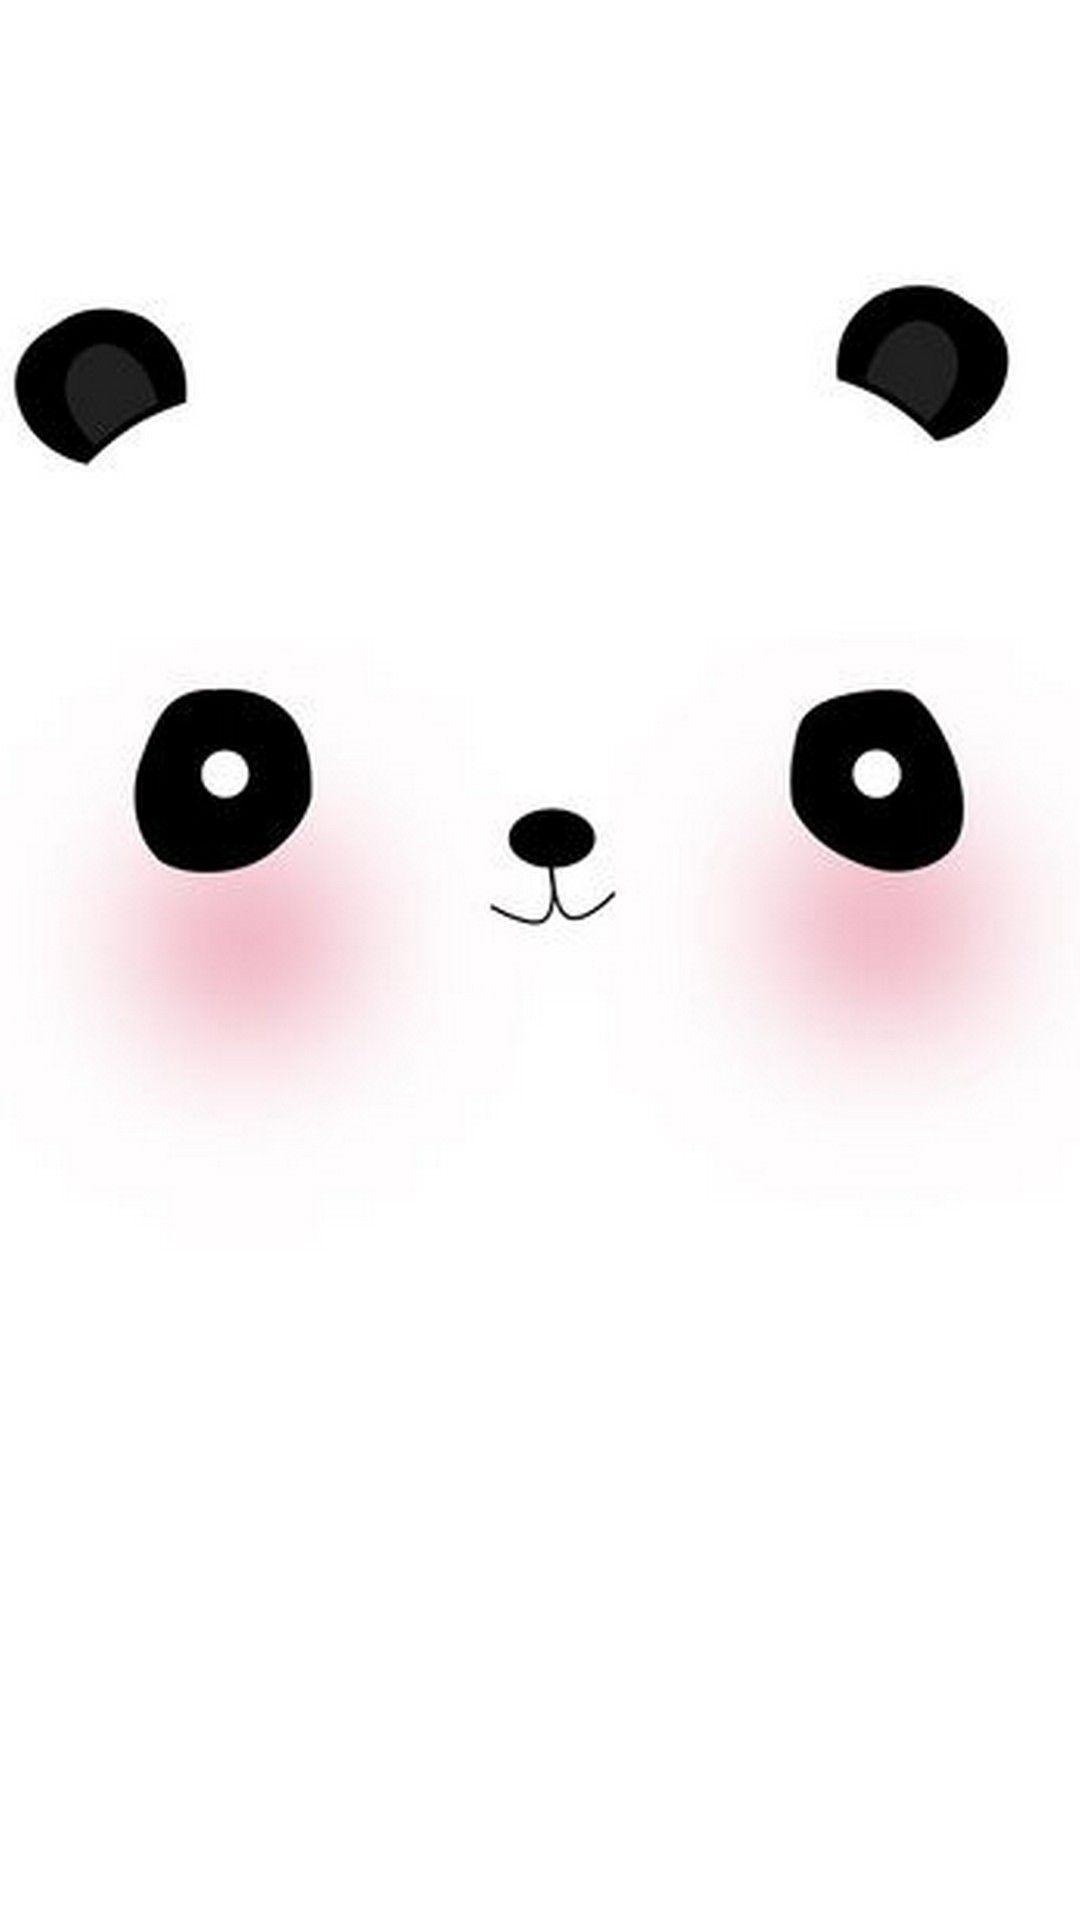 Cute Panda Wallpaper For Mobile. Best HD Wallpaper. Panda wallpaper, Cute panda wallpaper, Mobile wallpaper